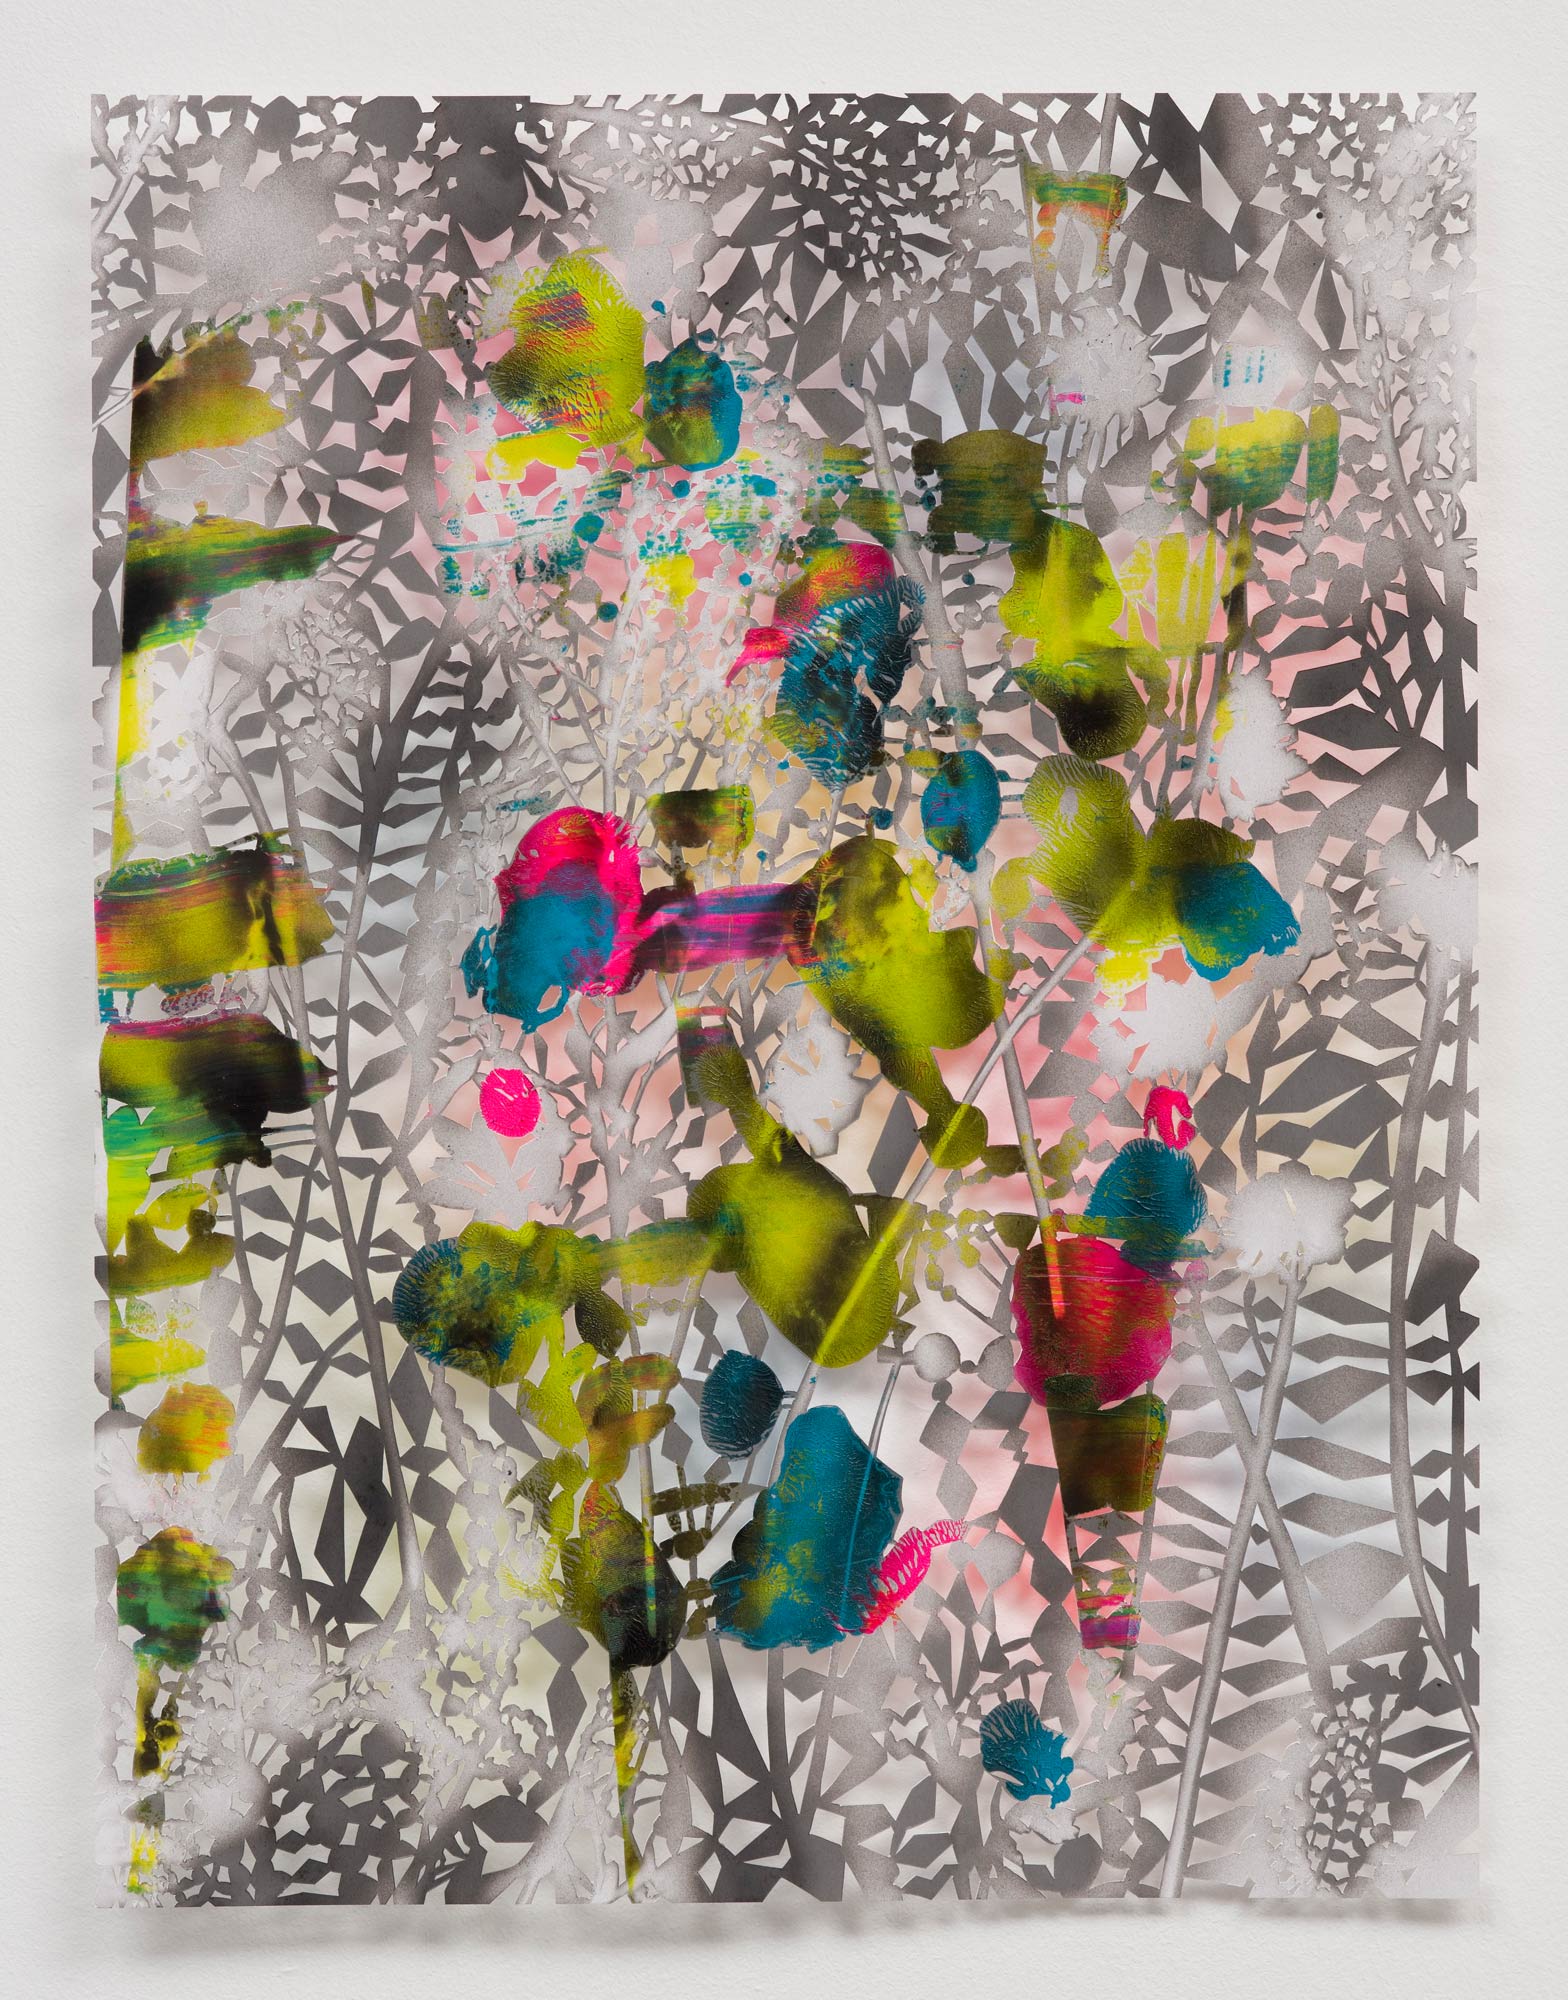 Gabriele Basch, hannahs garden IX, 2017, spraypaint on cutout paper, 65 x 50 cm